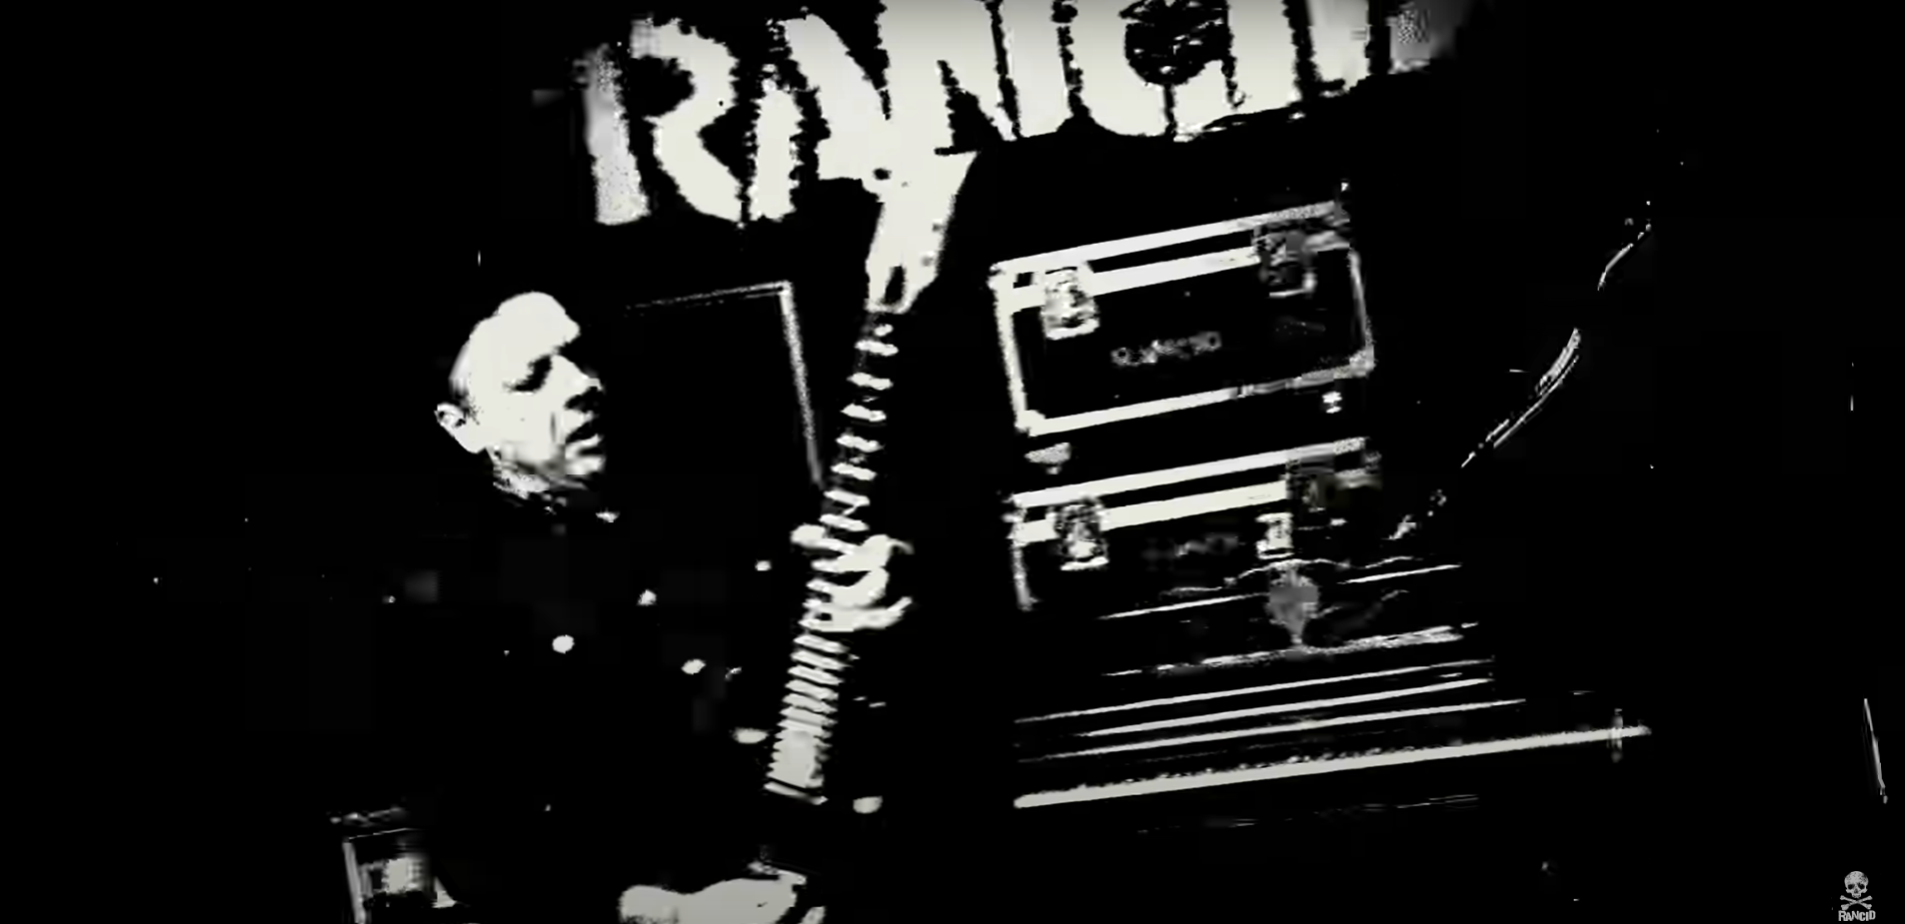 I Rancid tornano con "Tomorrow never comes", nuovo album anticipato dall'omonimo singolo (video)